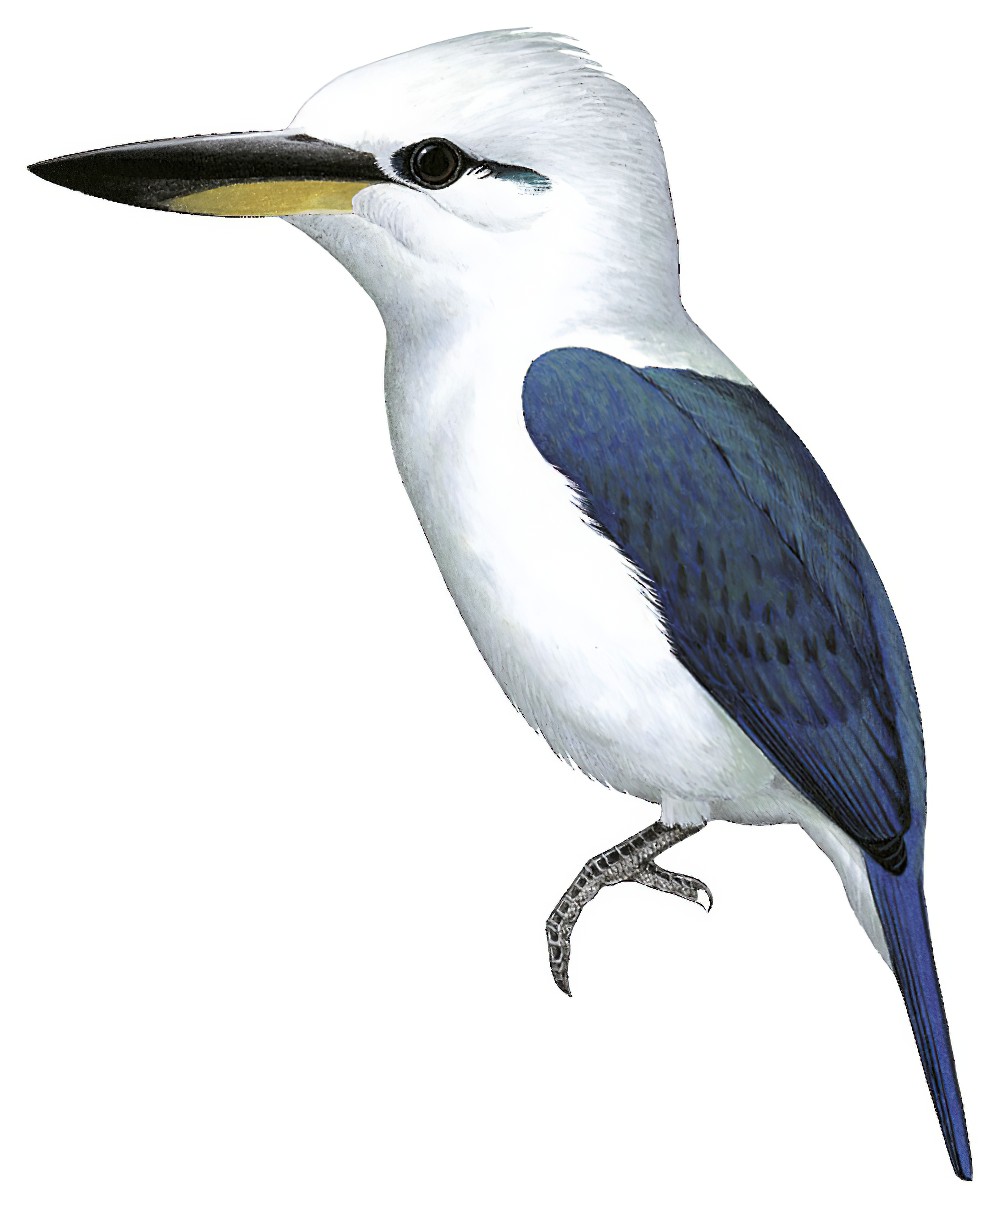 Beach Kingfisher / Todiramphus saurophagus